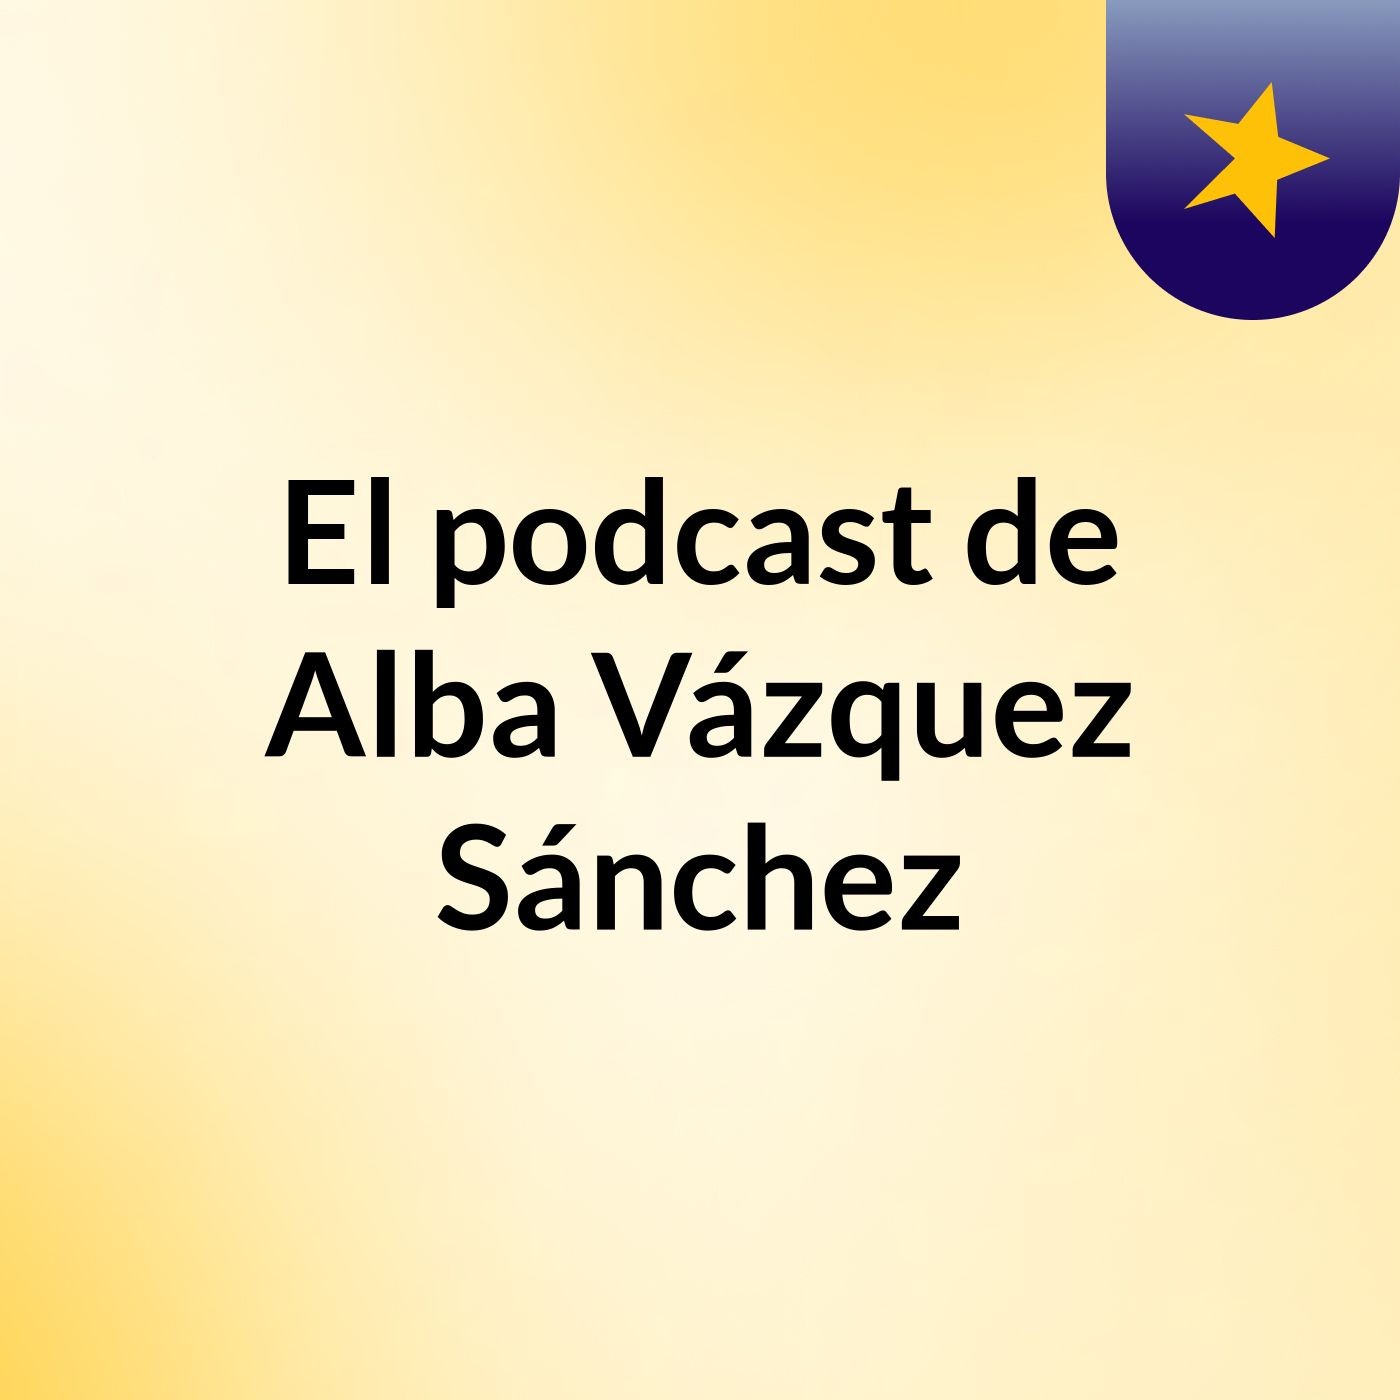 El podcast de Alba Vázquez Sánchez